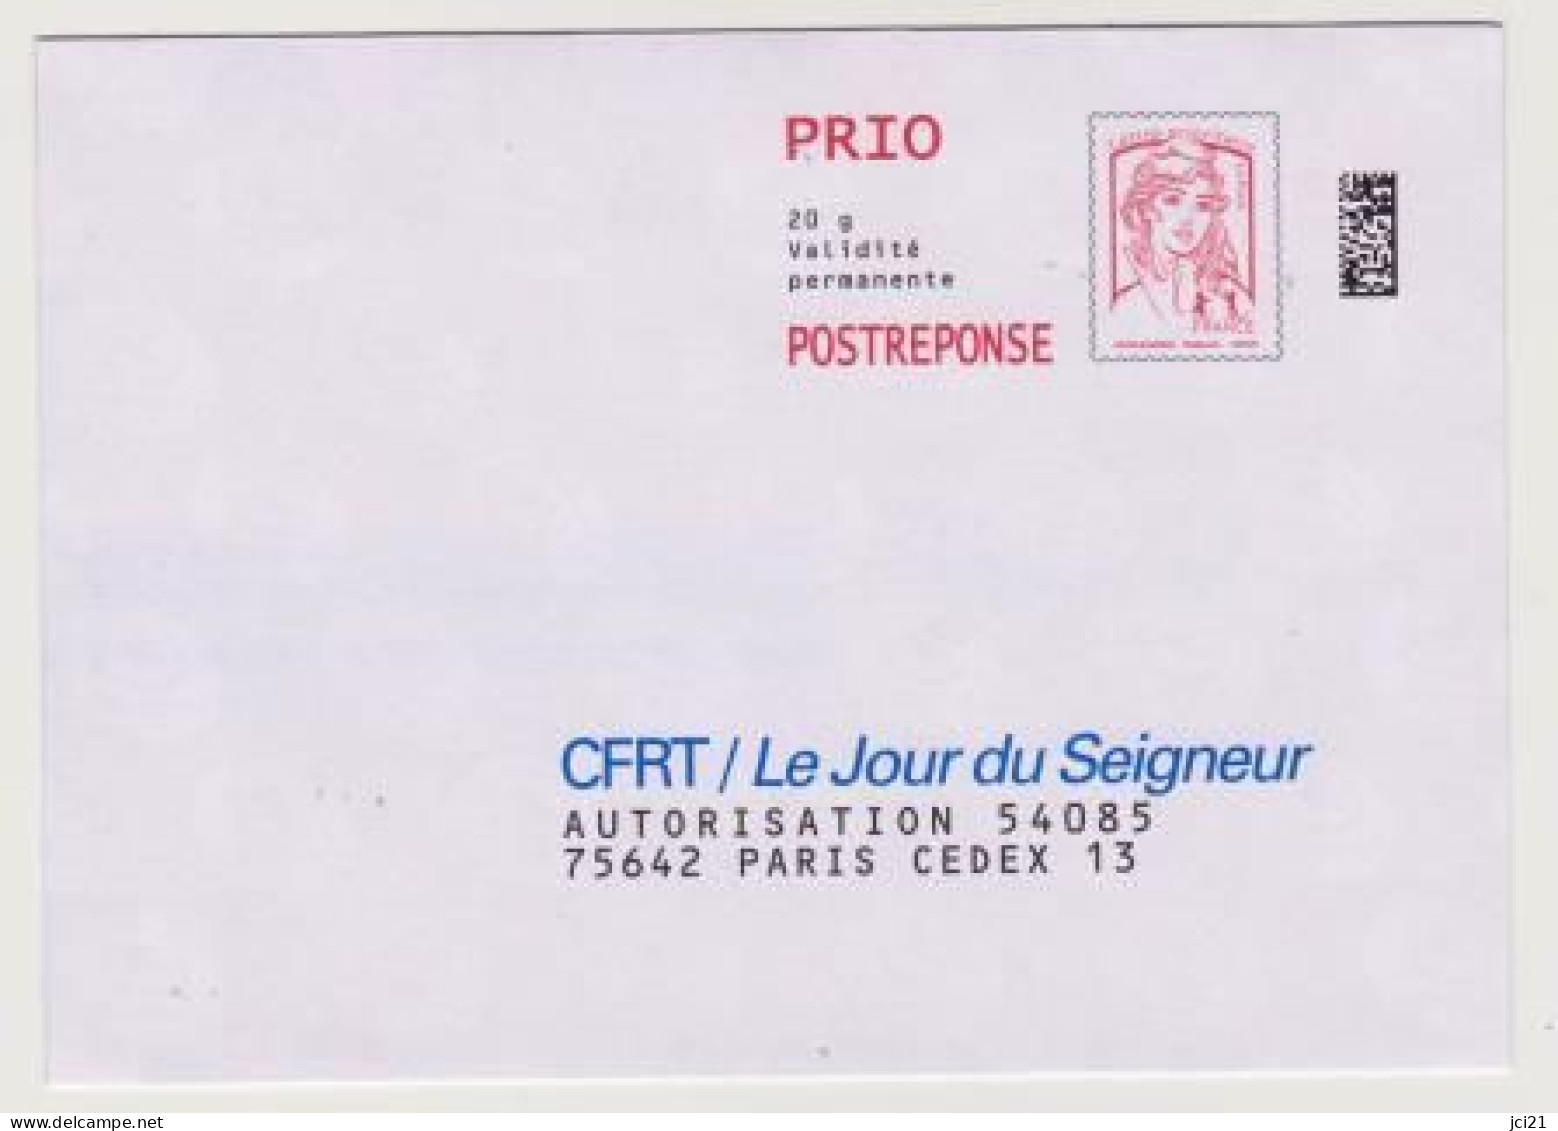 PAP "Marianne De La Jeunesse" Ciappa&Kavena POSTREPONSE PRIO Datamatrix -CFRT/Le Jour Du Seigneur- Neuve_P453 - Prêts-à-poster: Réponse /Ciappa-Kavena